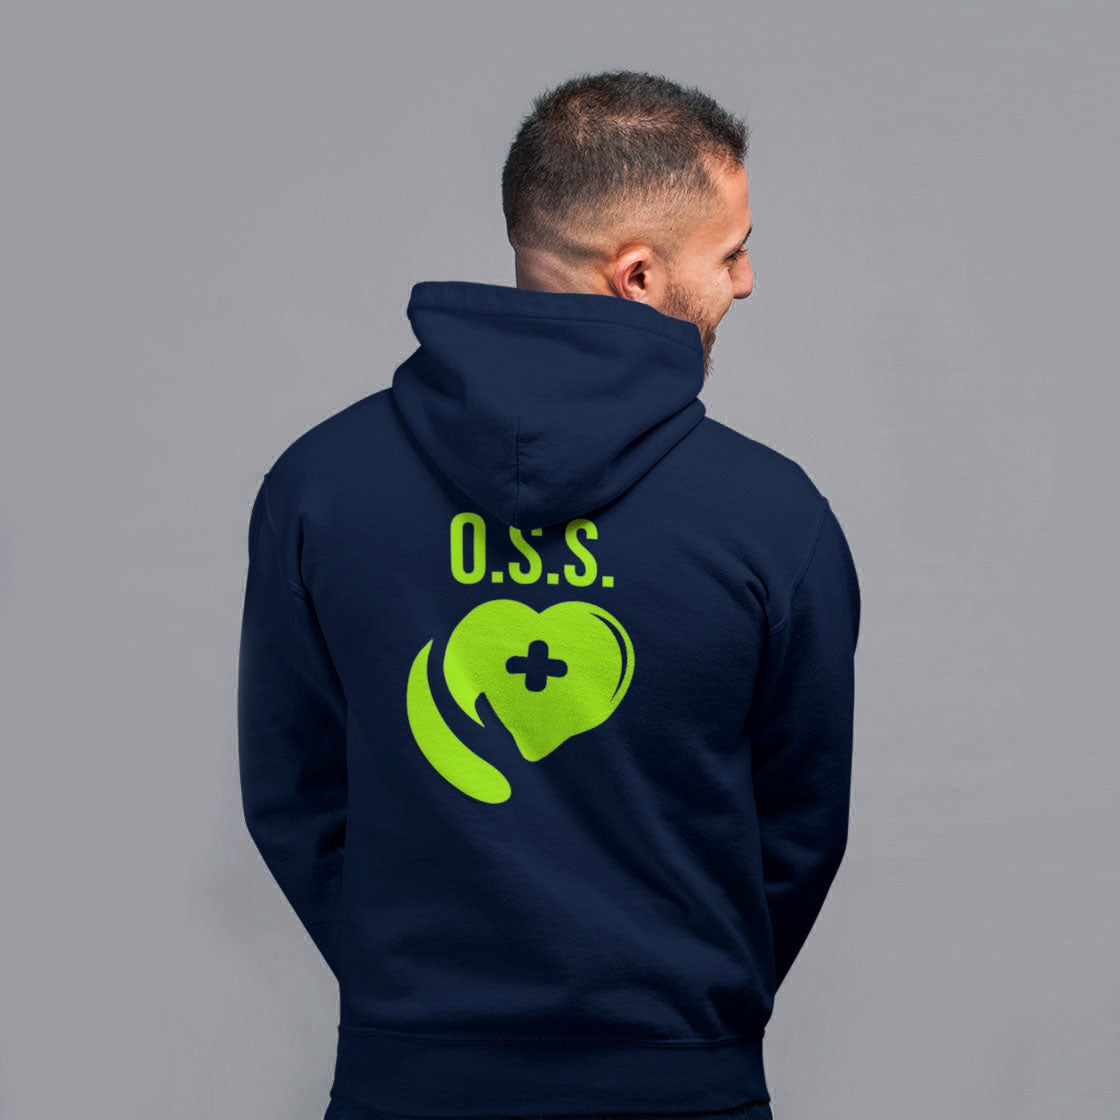 Oss Unisex "Heart" Sweatshirt - Hood and Zip